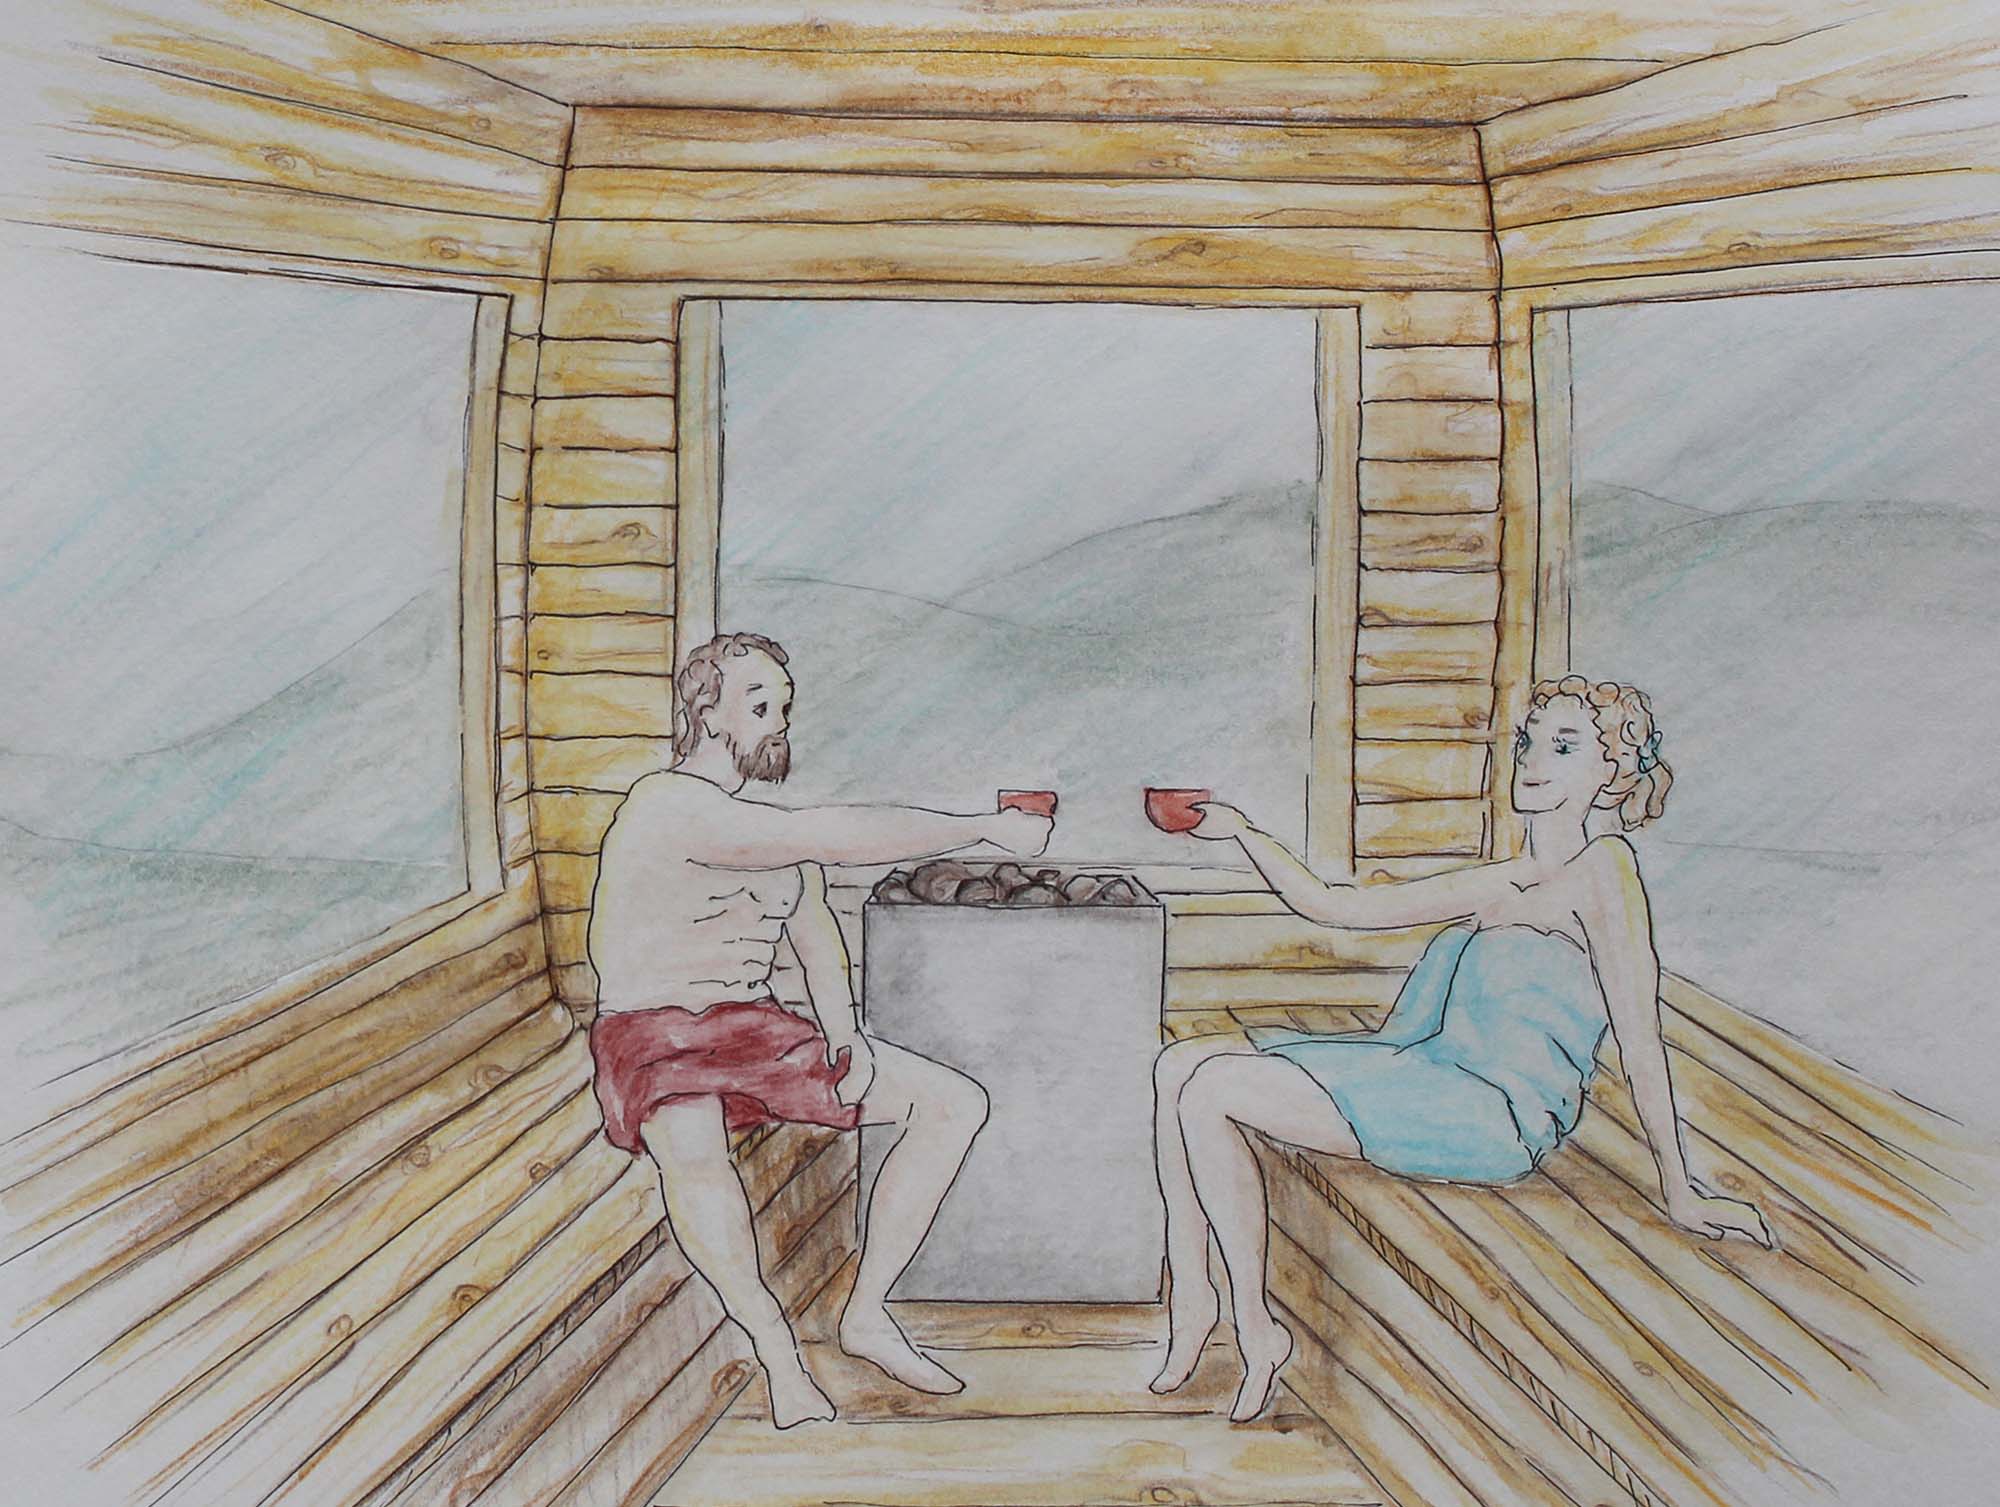 Zeichnung Sauna von innen aus Zirbenholz mit Mann und Frau